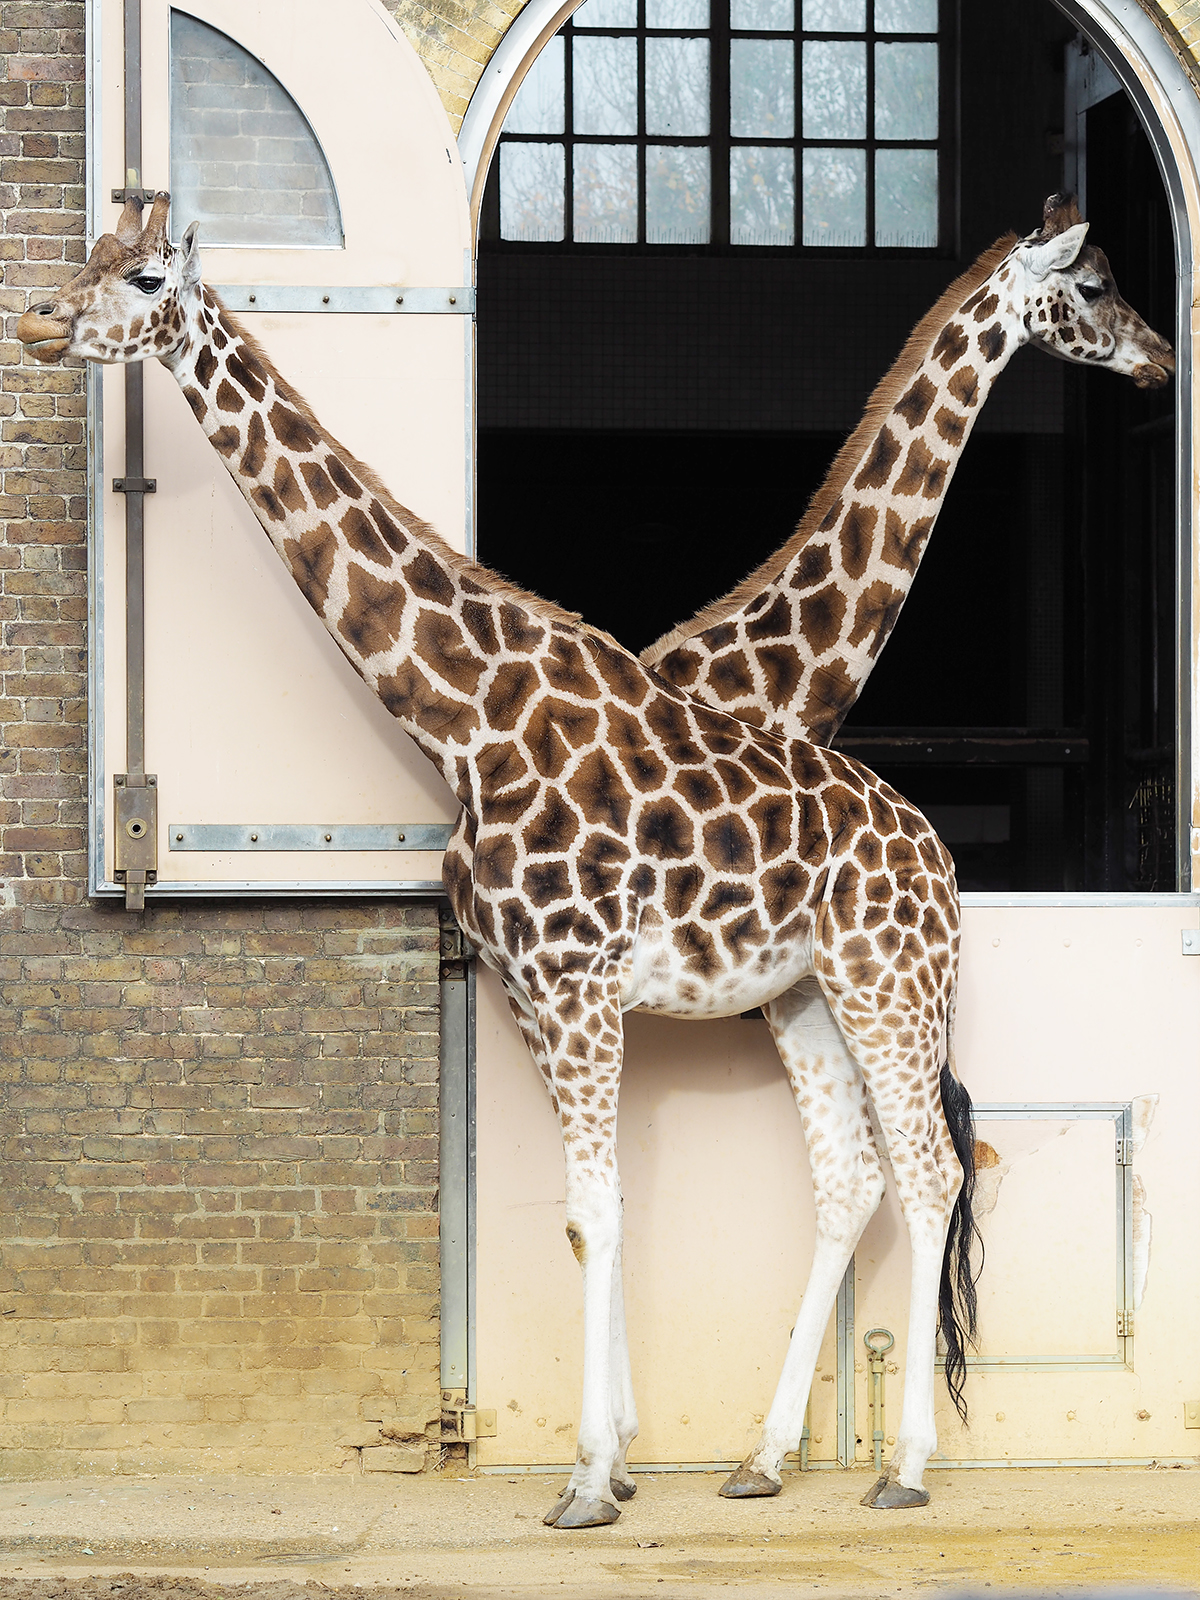 ZSL london zoo giraffes